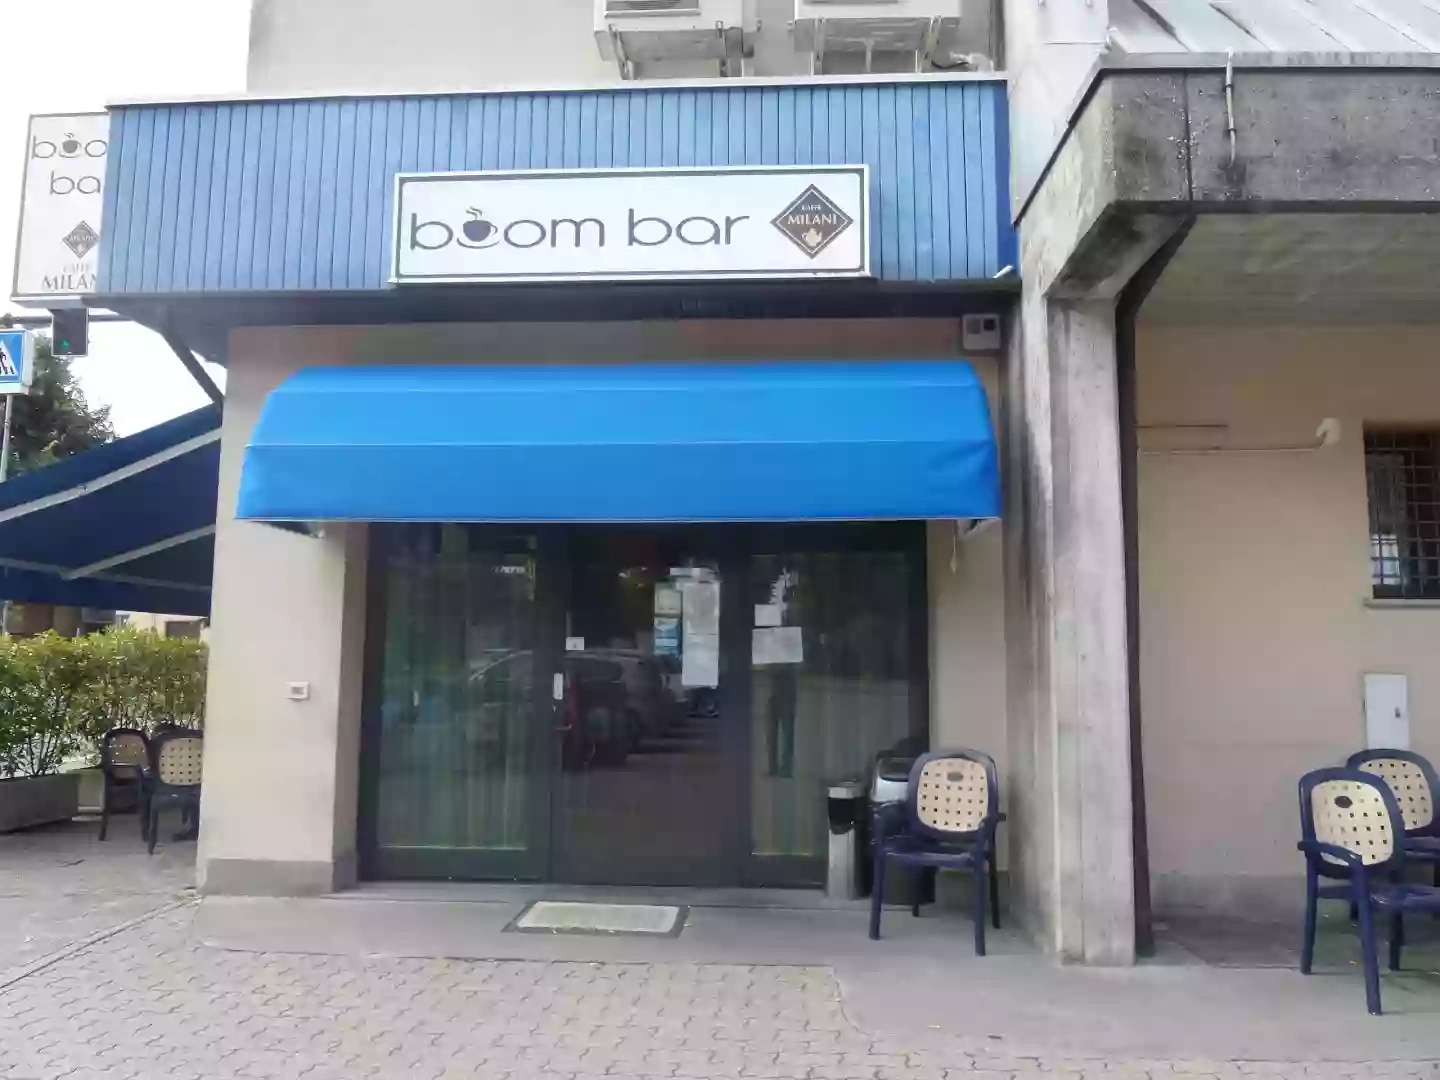 Boom Bar